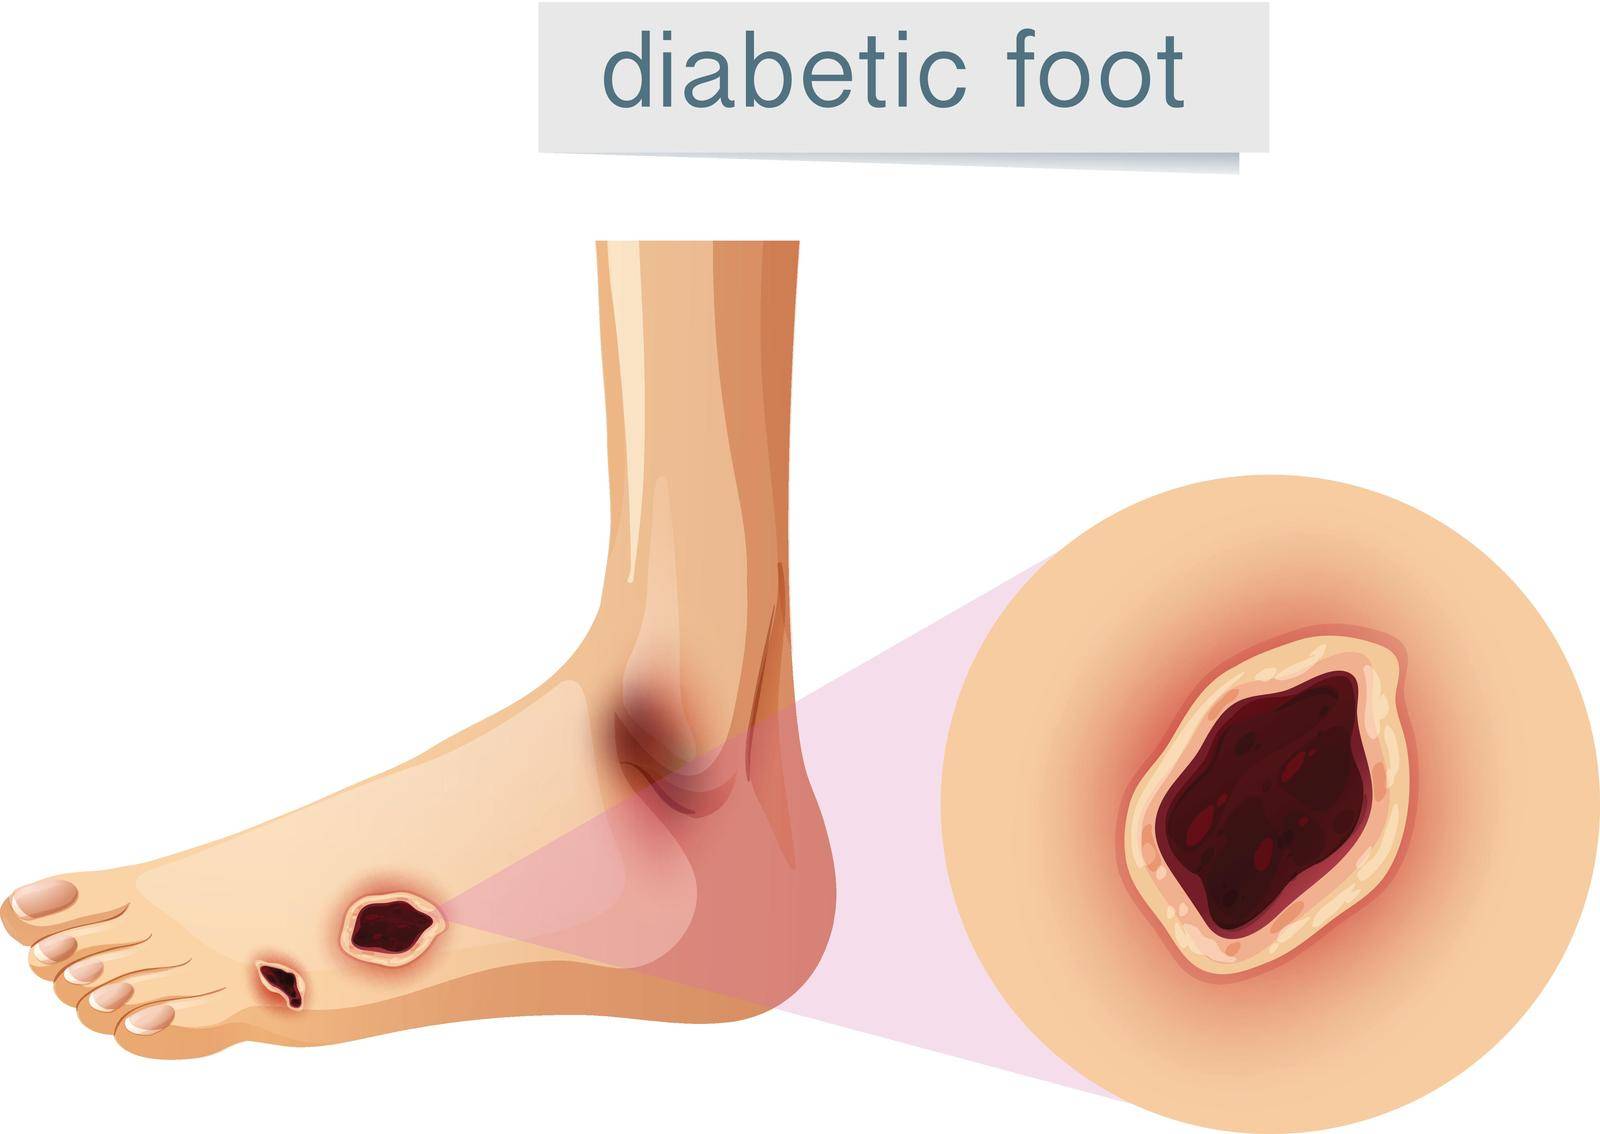 Diabetic foot magnifed on foot by iimages